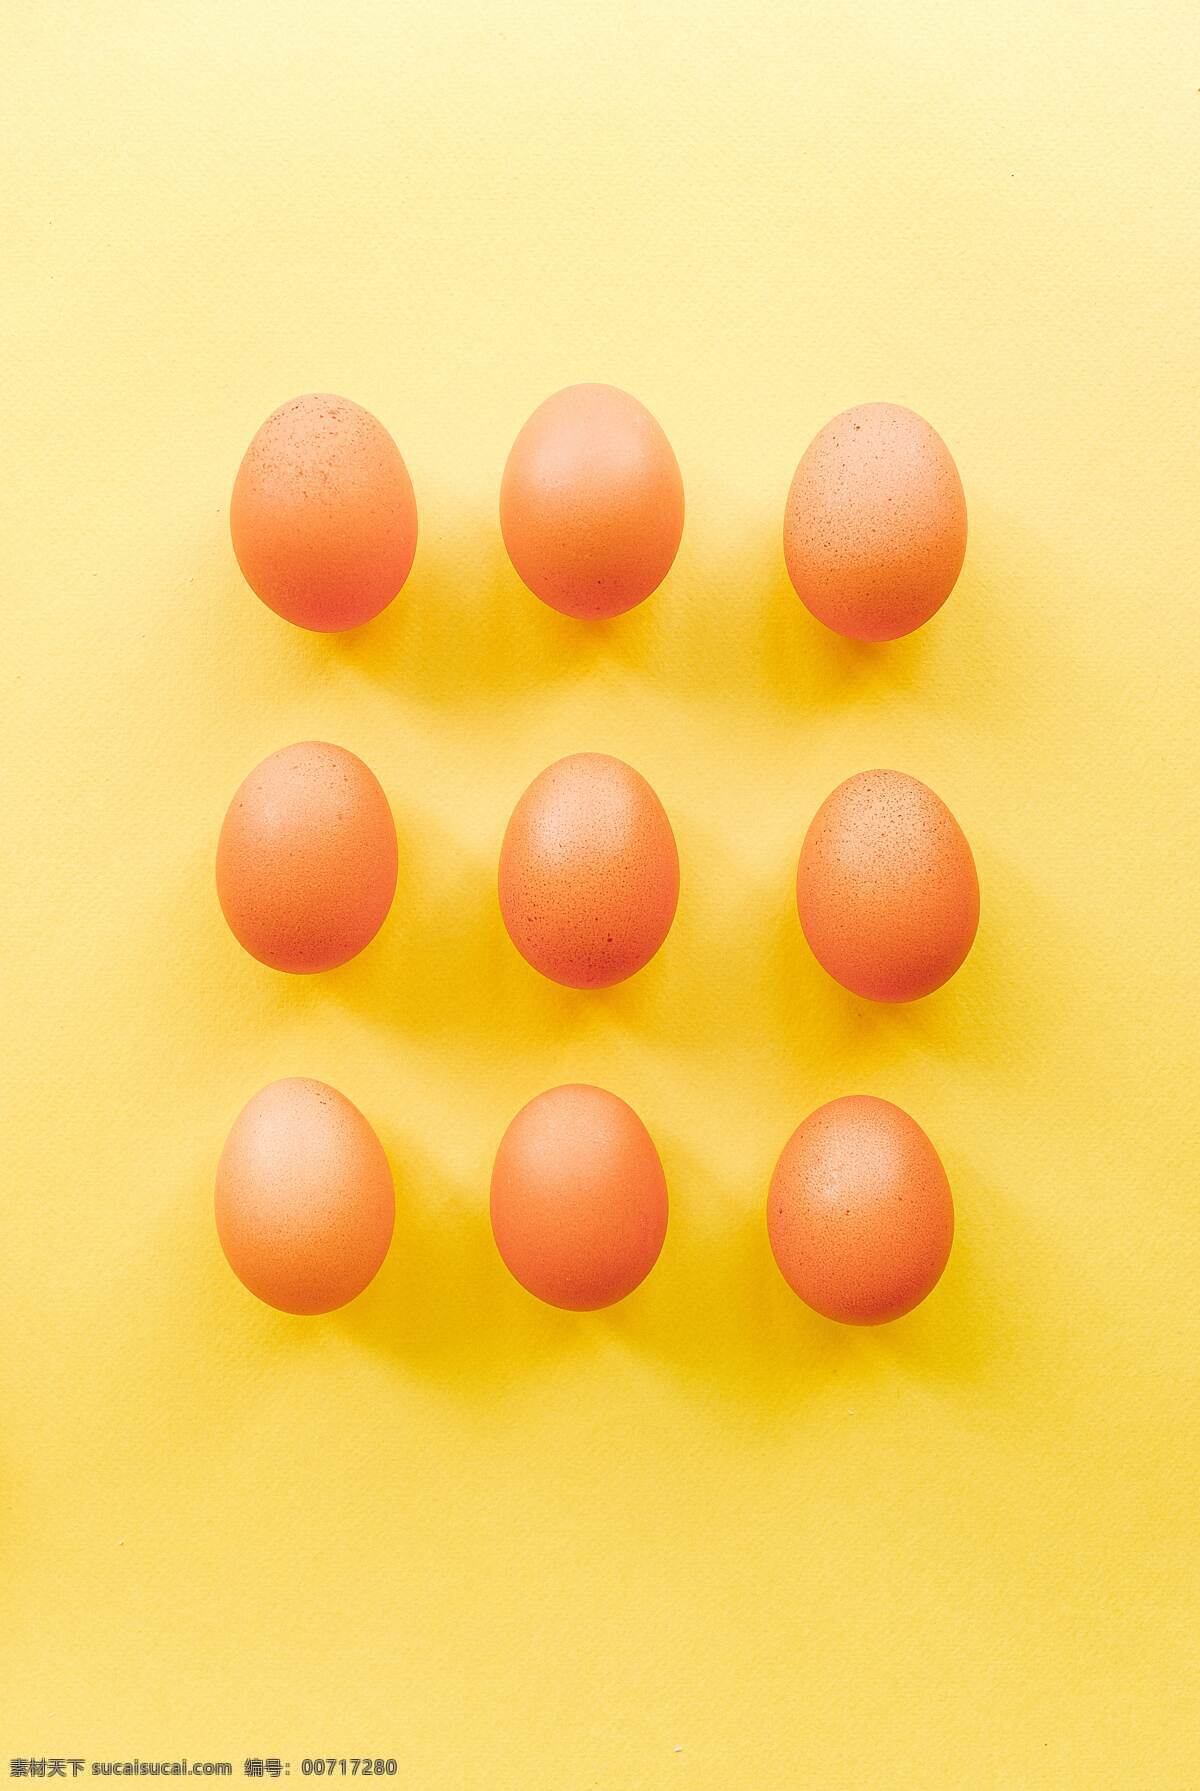 鸡蛋 草鸡蛋 盒装鸡蛋 土鸡蛋 蛋 禽蛋 黄色背景 餐饮美食 食物原料